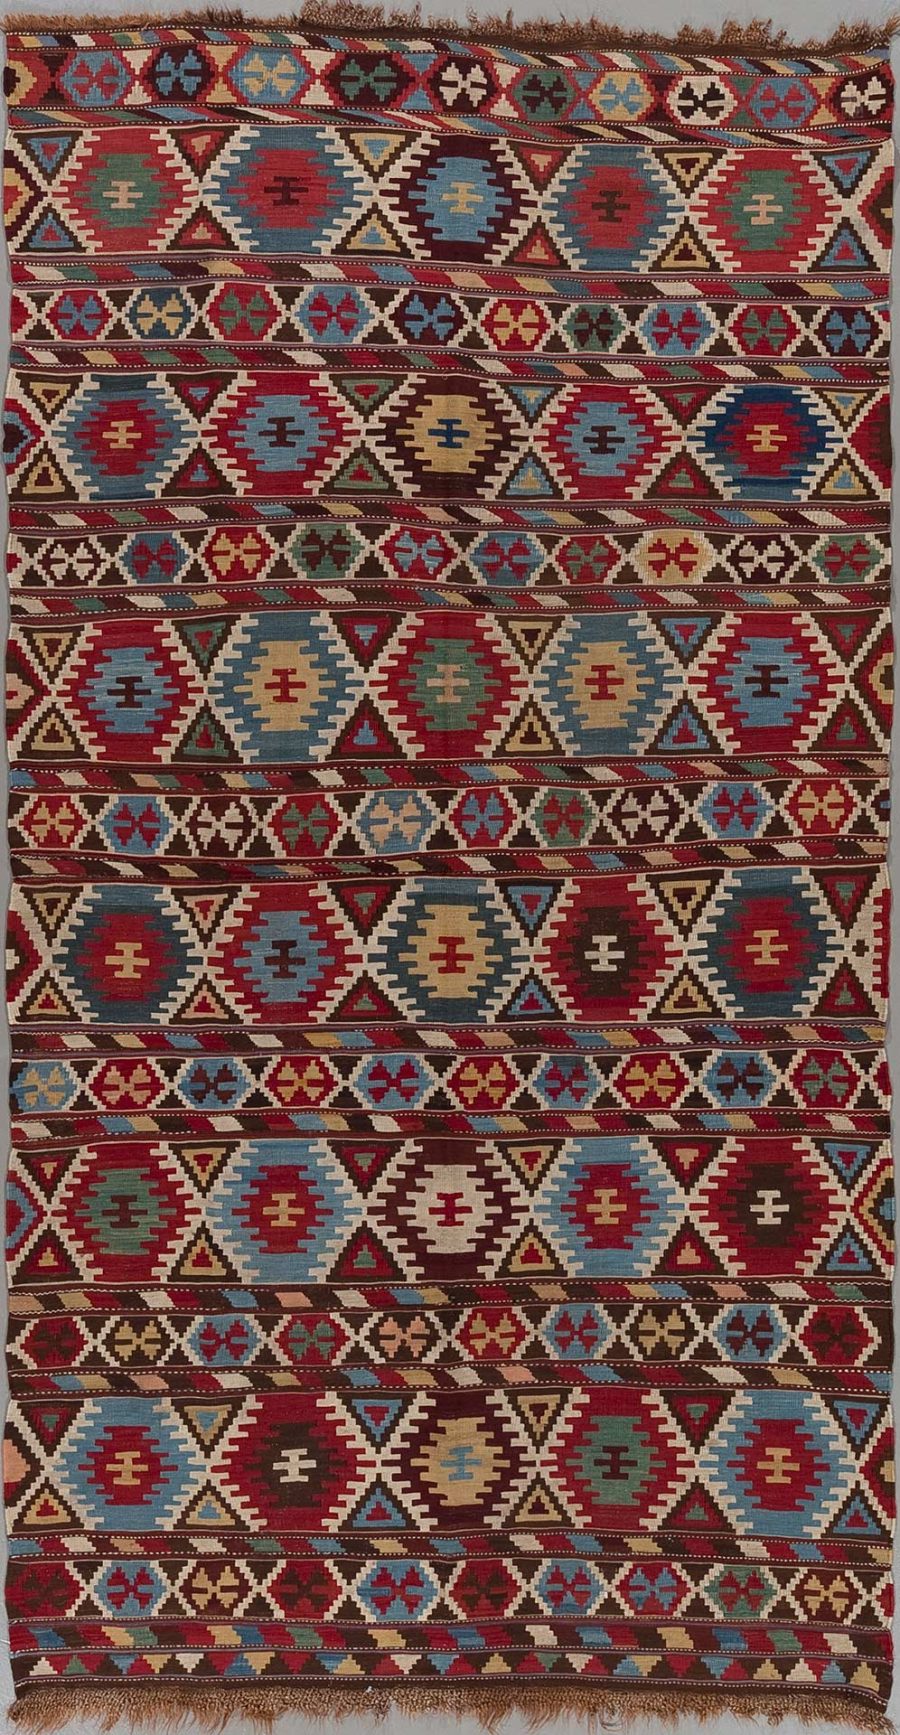 Traditioneller handgewebter Teppich mit geometrischen Mustern in Rot-, Blau-, Braun- und Beigetönen.